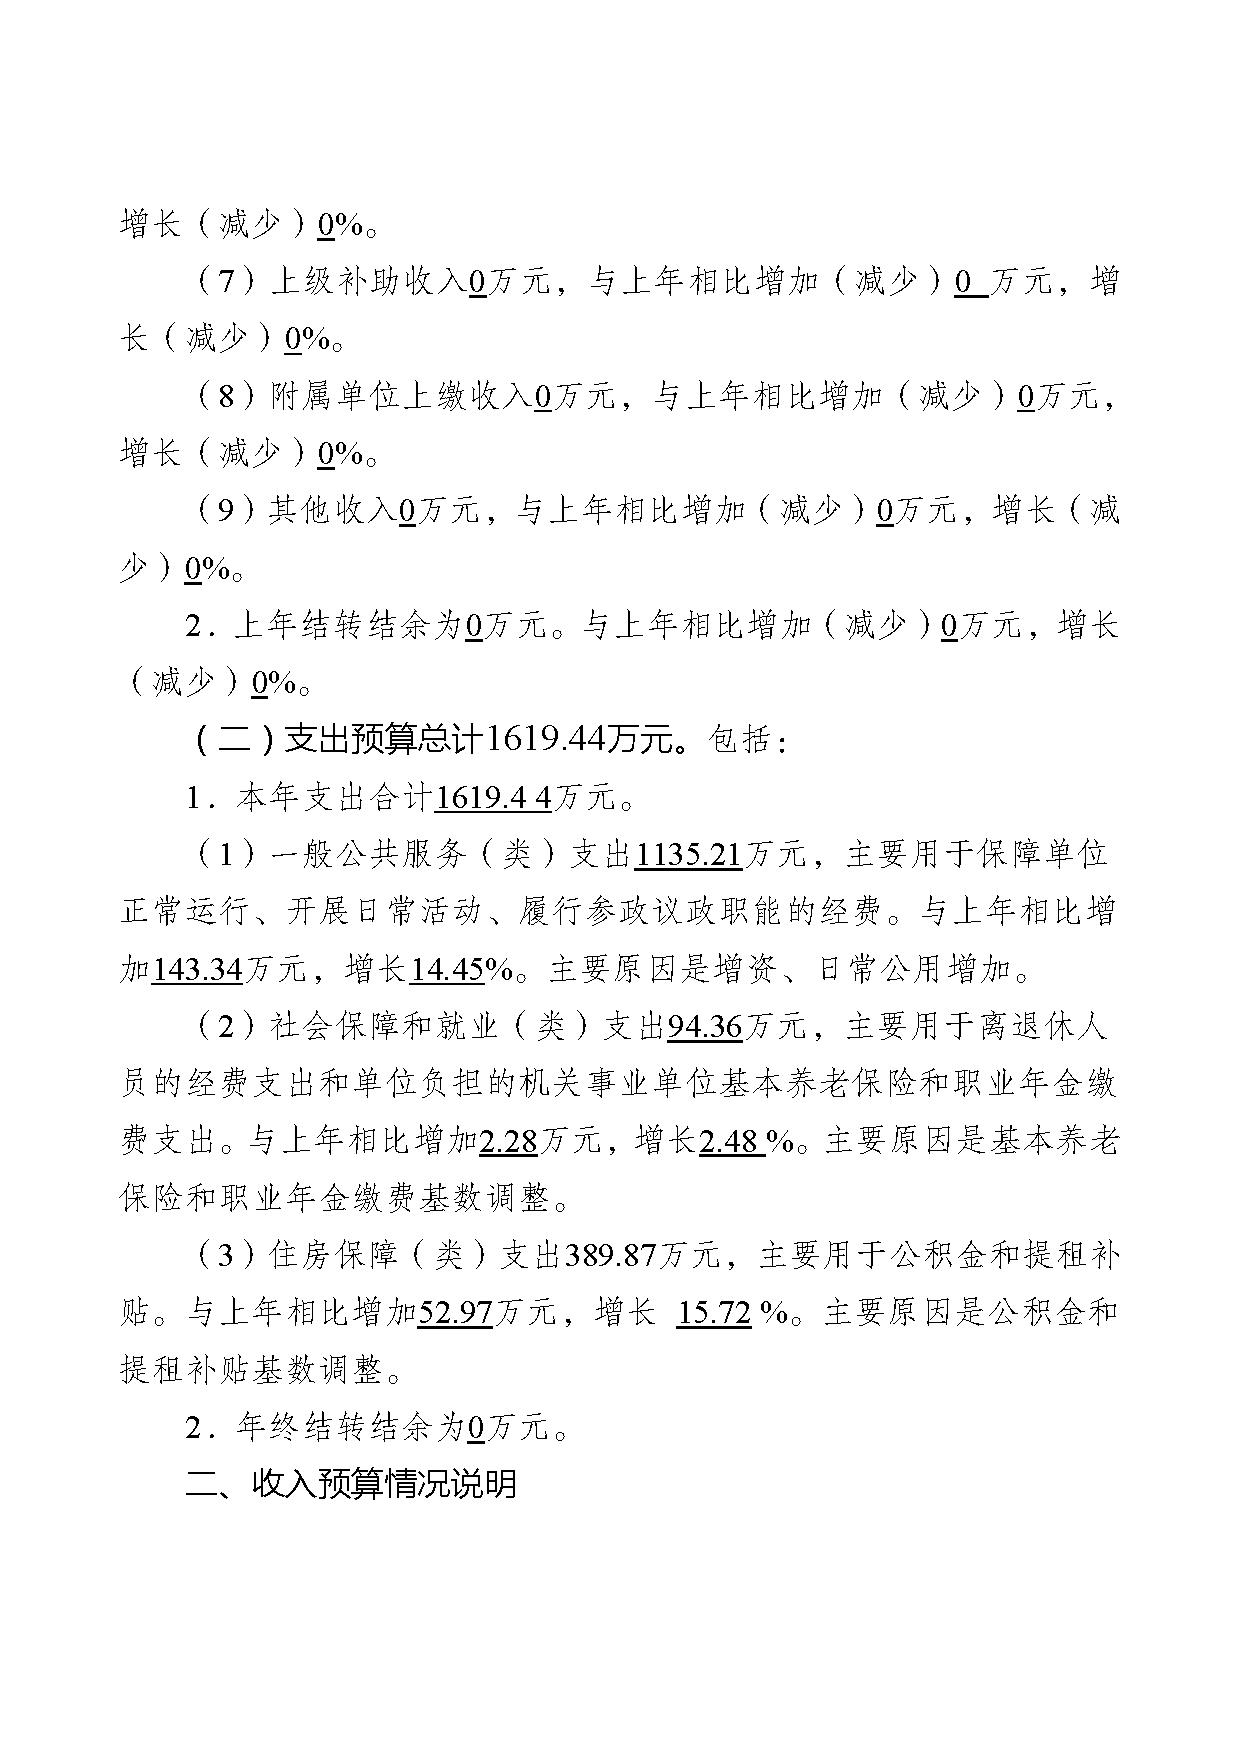 2021年度中国民主建国会江苏省委员会部门预算公开-22.jpg